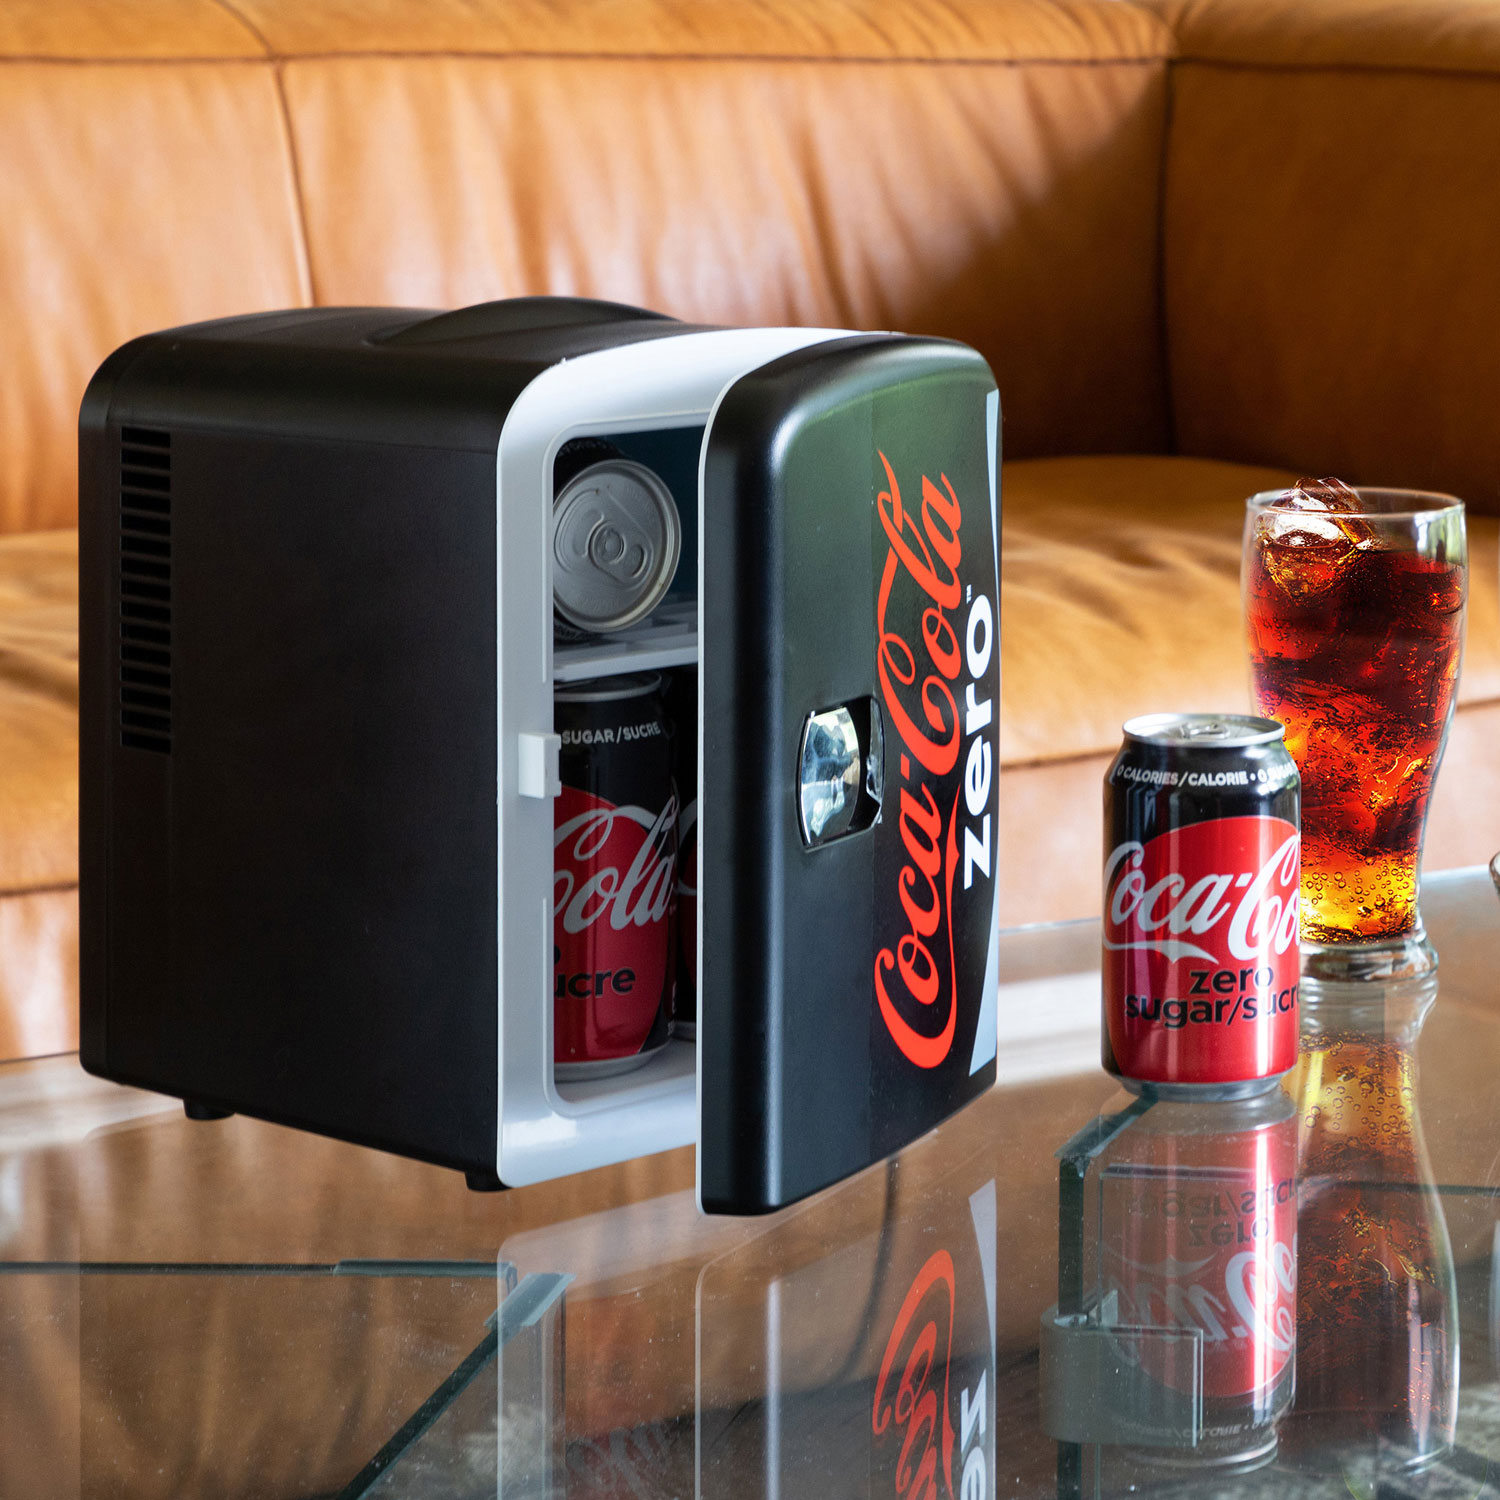 Coca-Cola Mini frigo rouge portable, capacité de 6 canettes, refroidisseur  alimentation CA/CC 